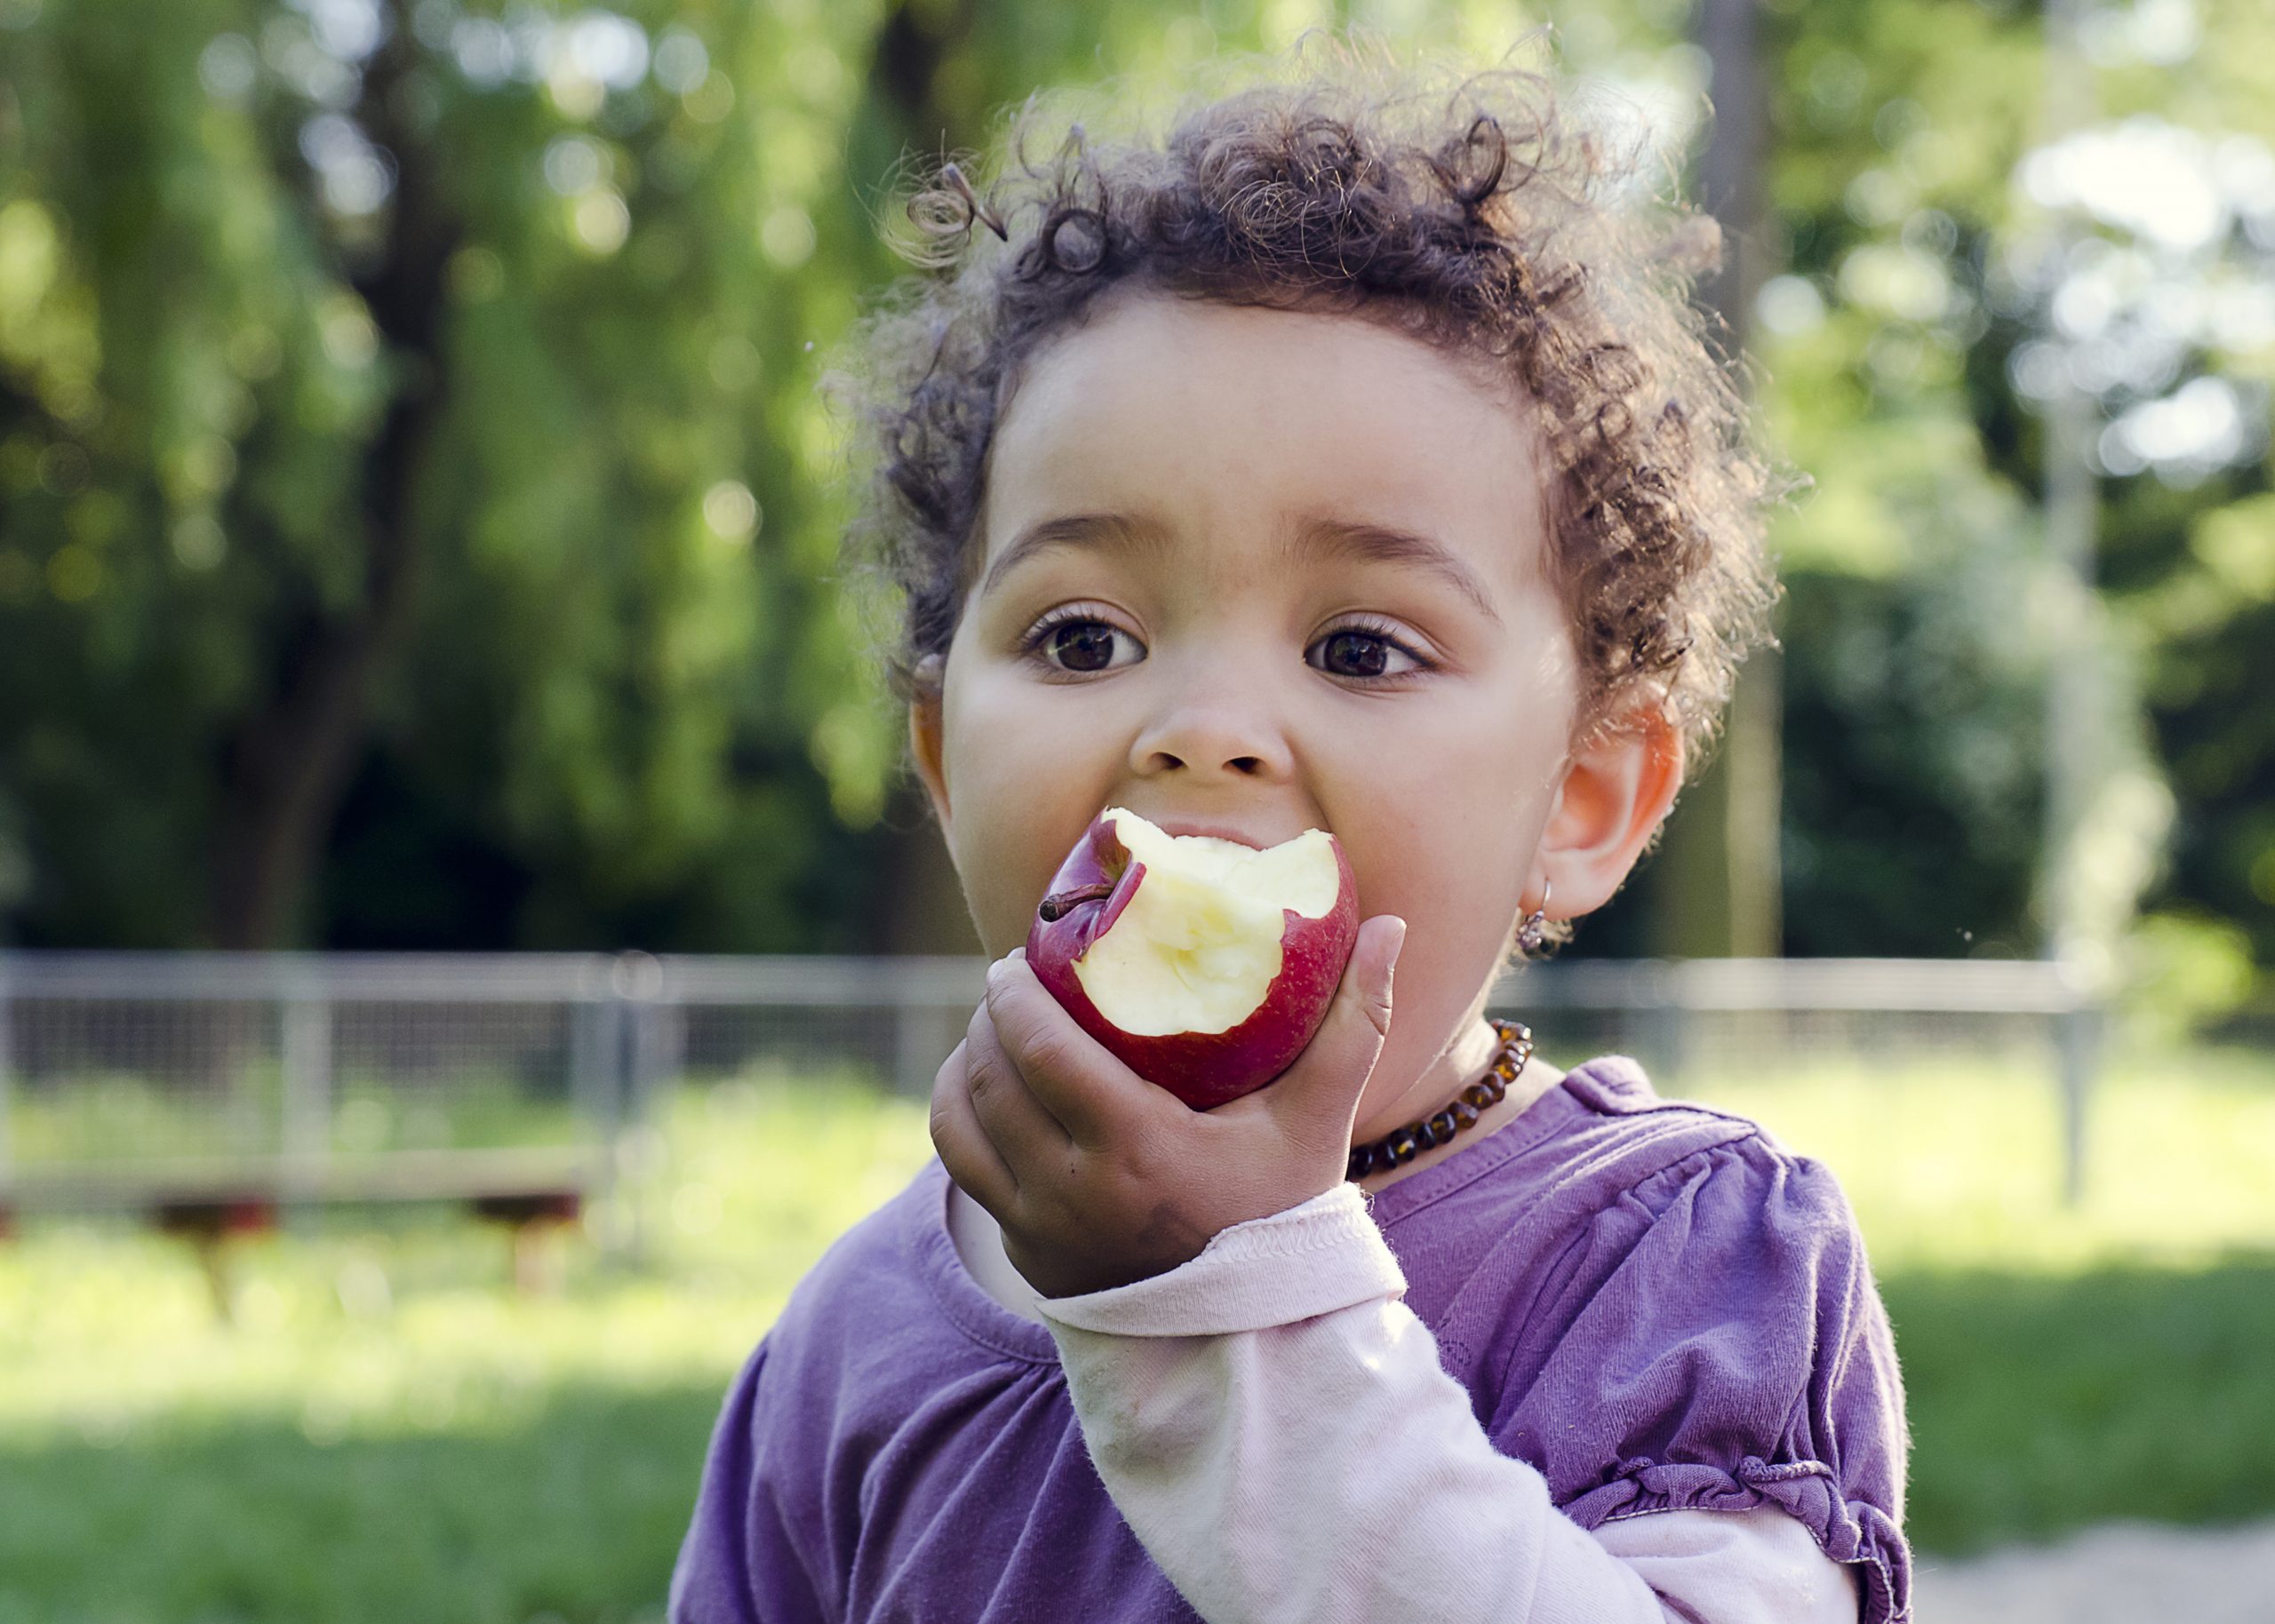 Toddler girl eating an apple